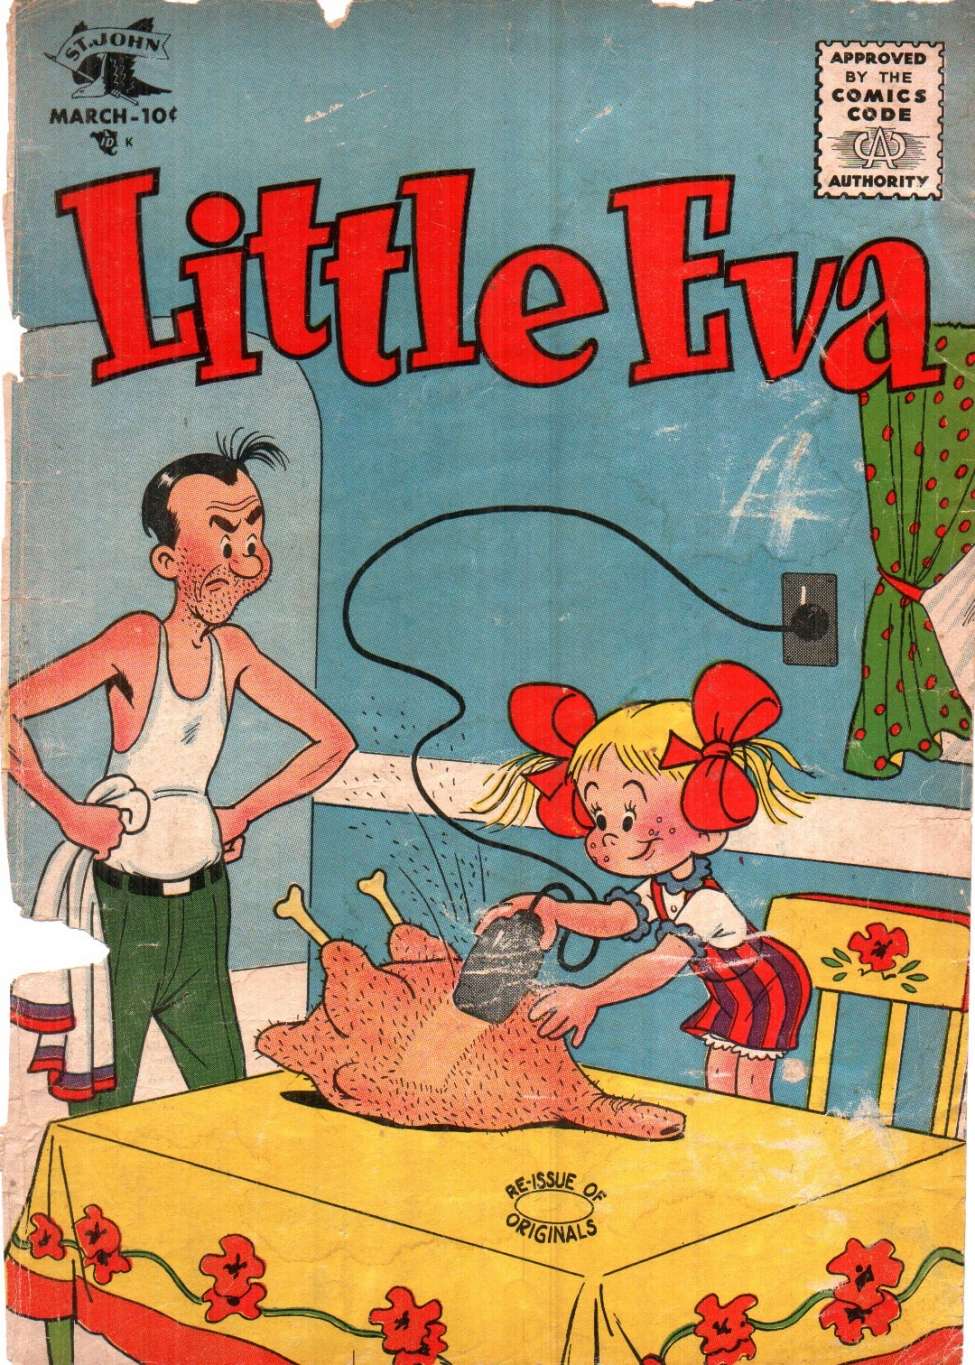 Little Eva 23 (St. John) - Comic Book Plus